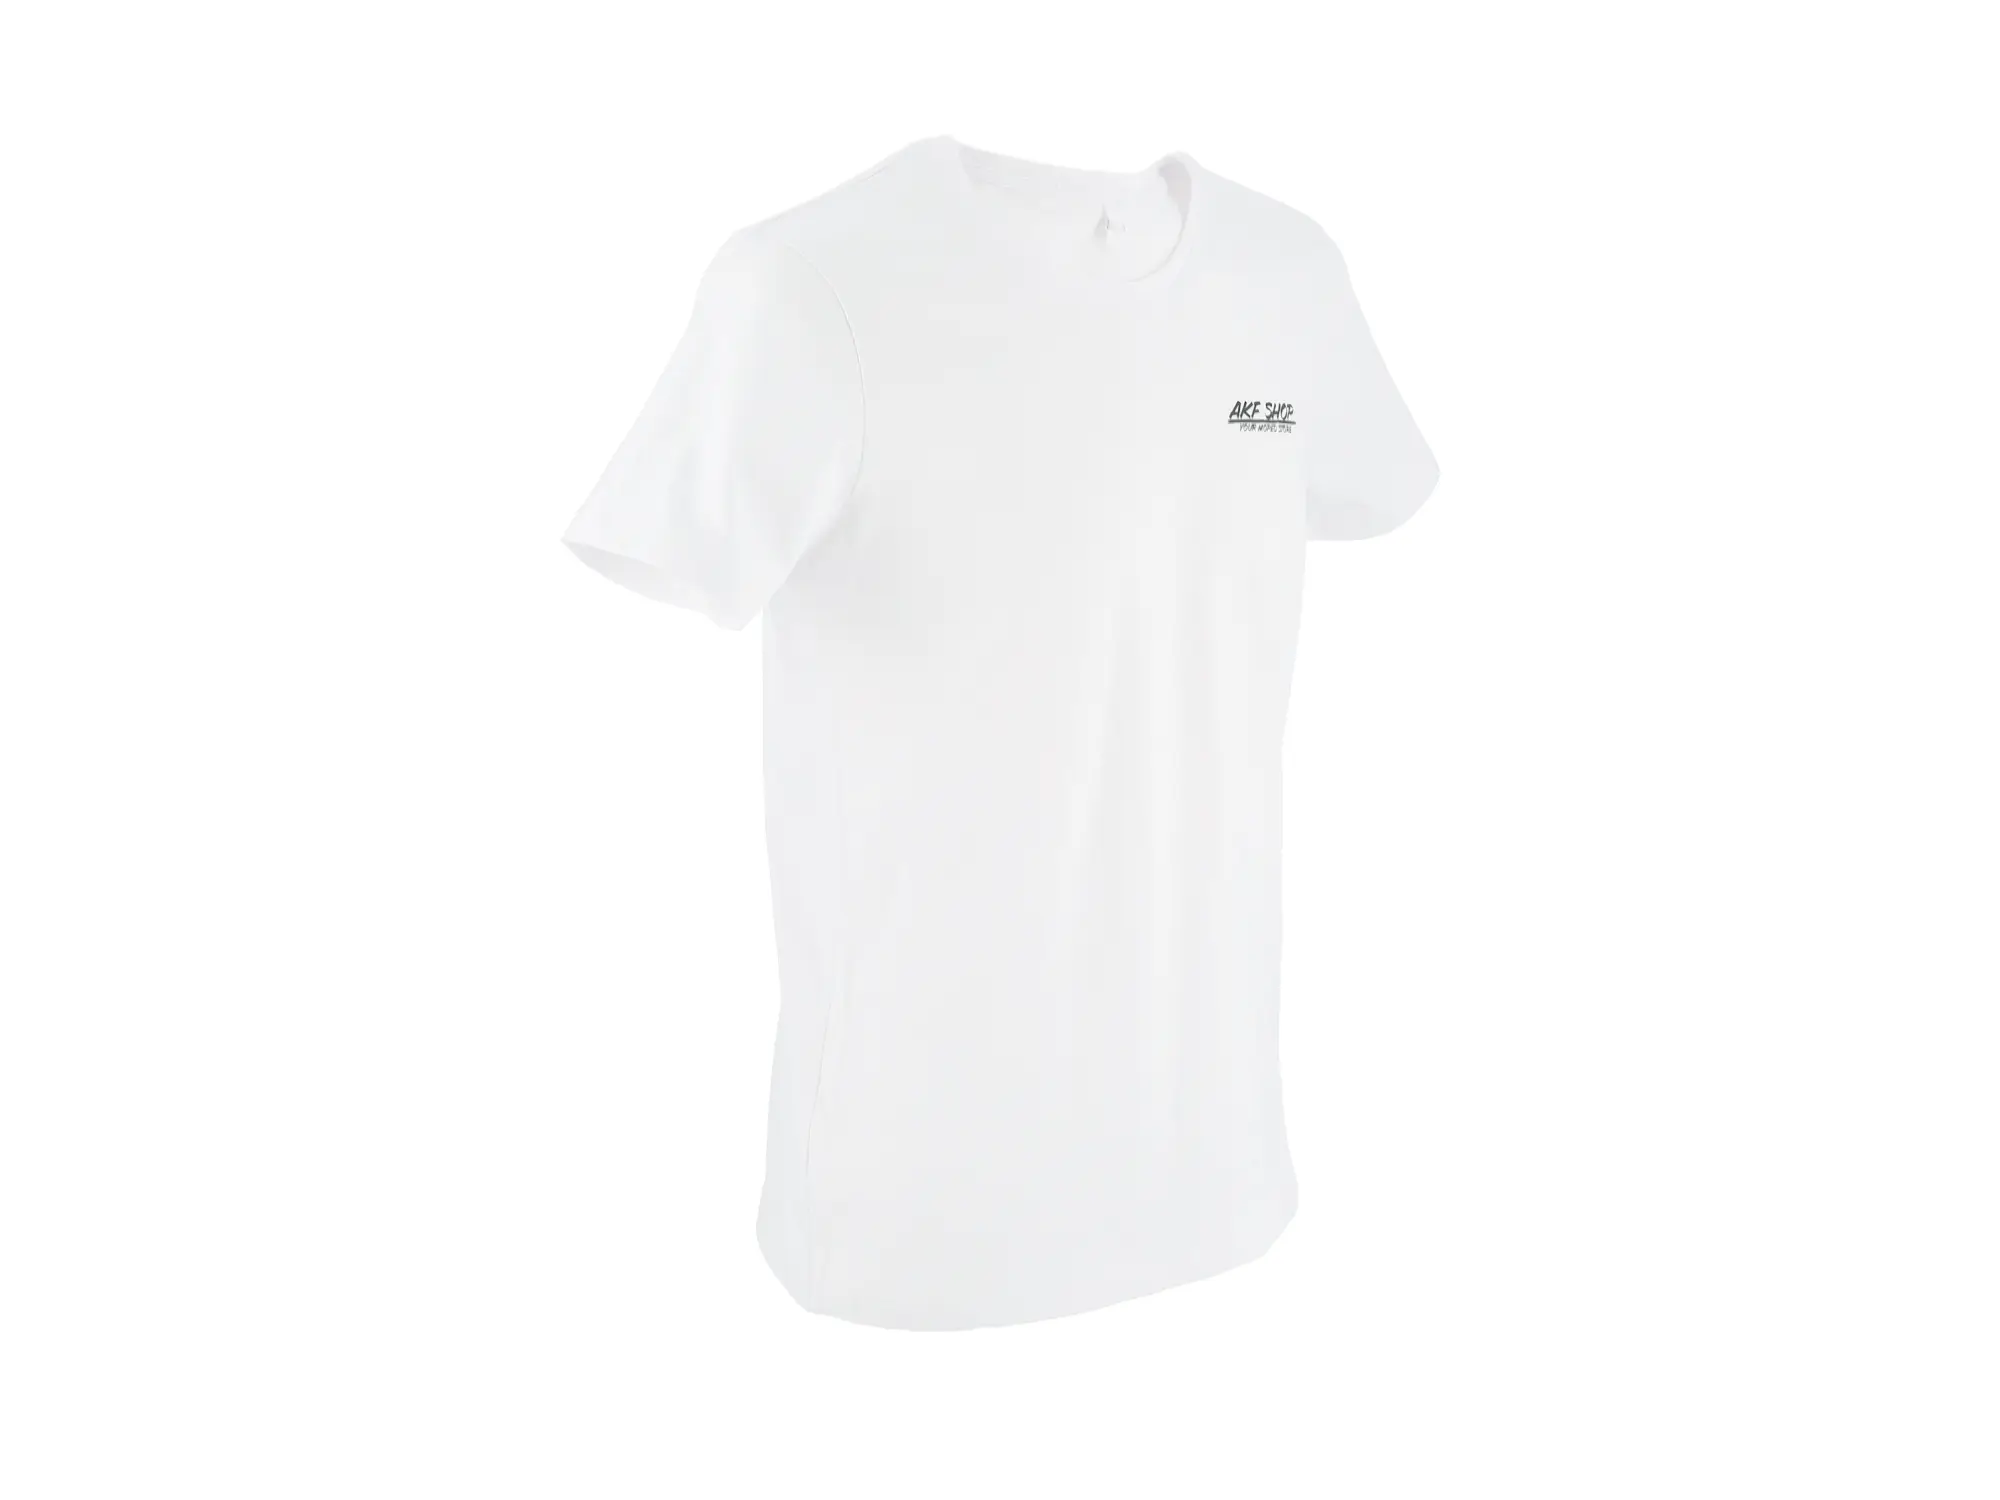 T-Shirt "Benzinhahn" in Weiß, Item no: 10076690 - Image 1